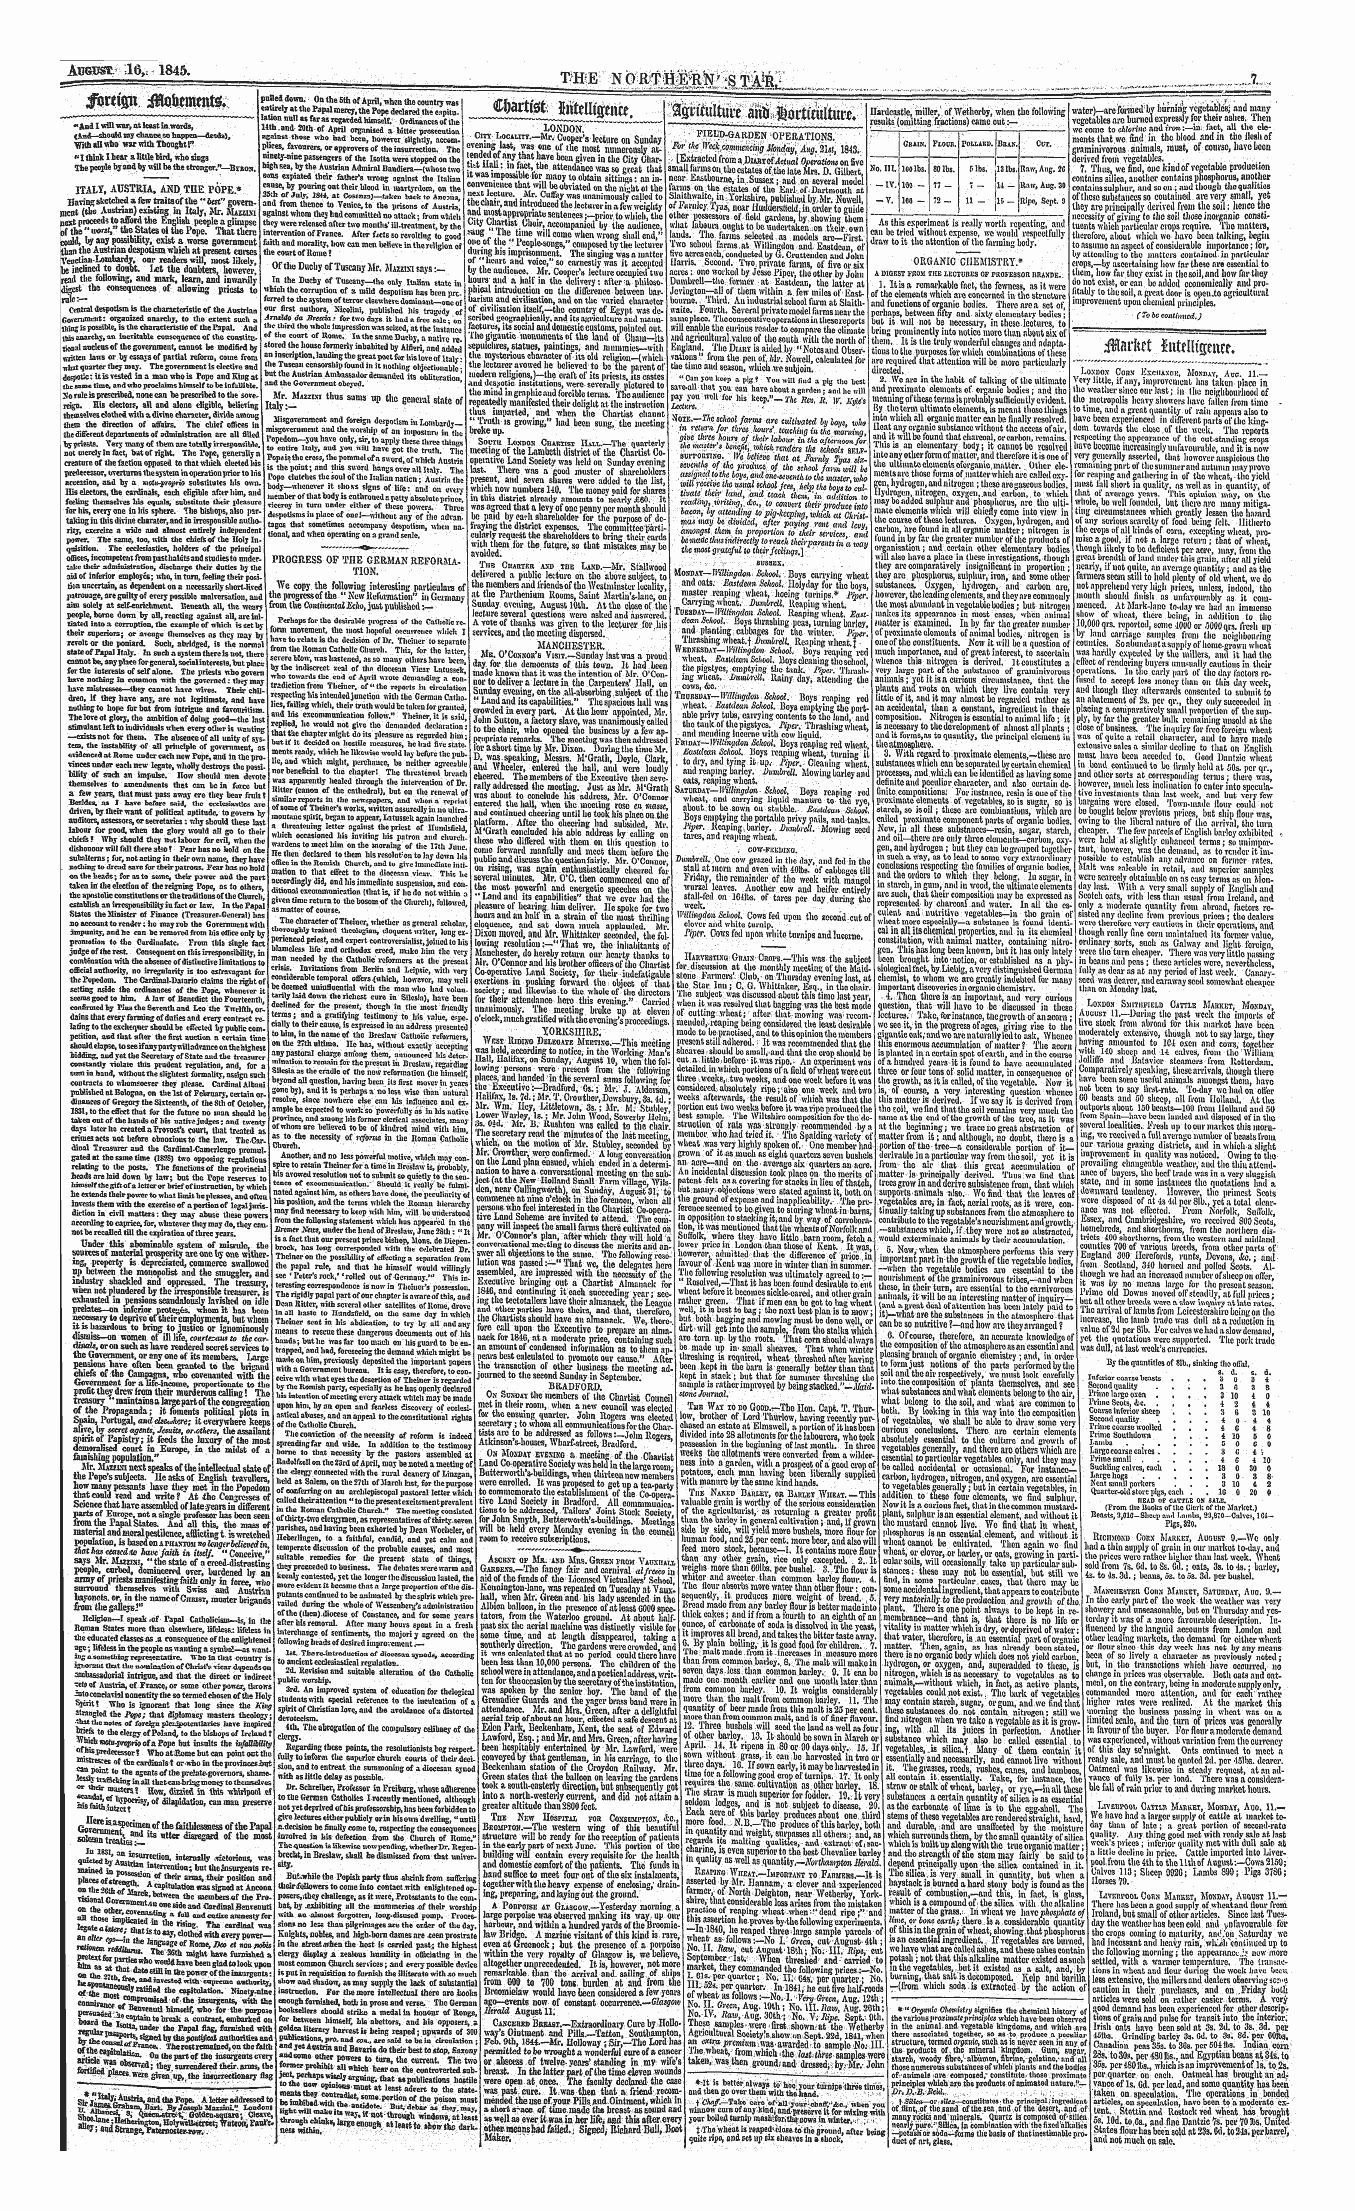 Northern Star (1837-1852): jS F Y, 1st edition - Sfaftultuw Aitti , Iflrttailturc